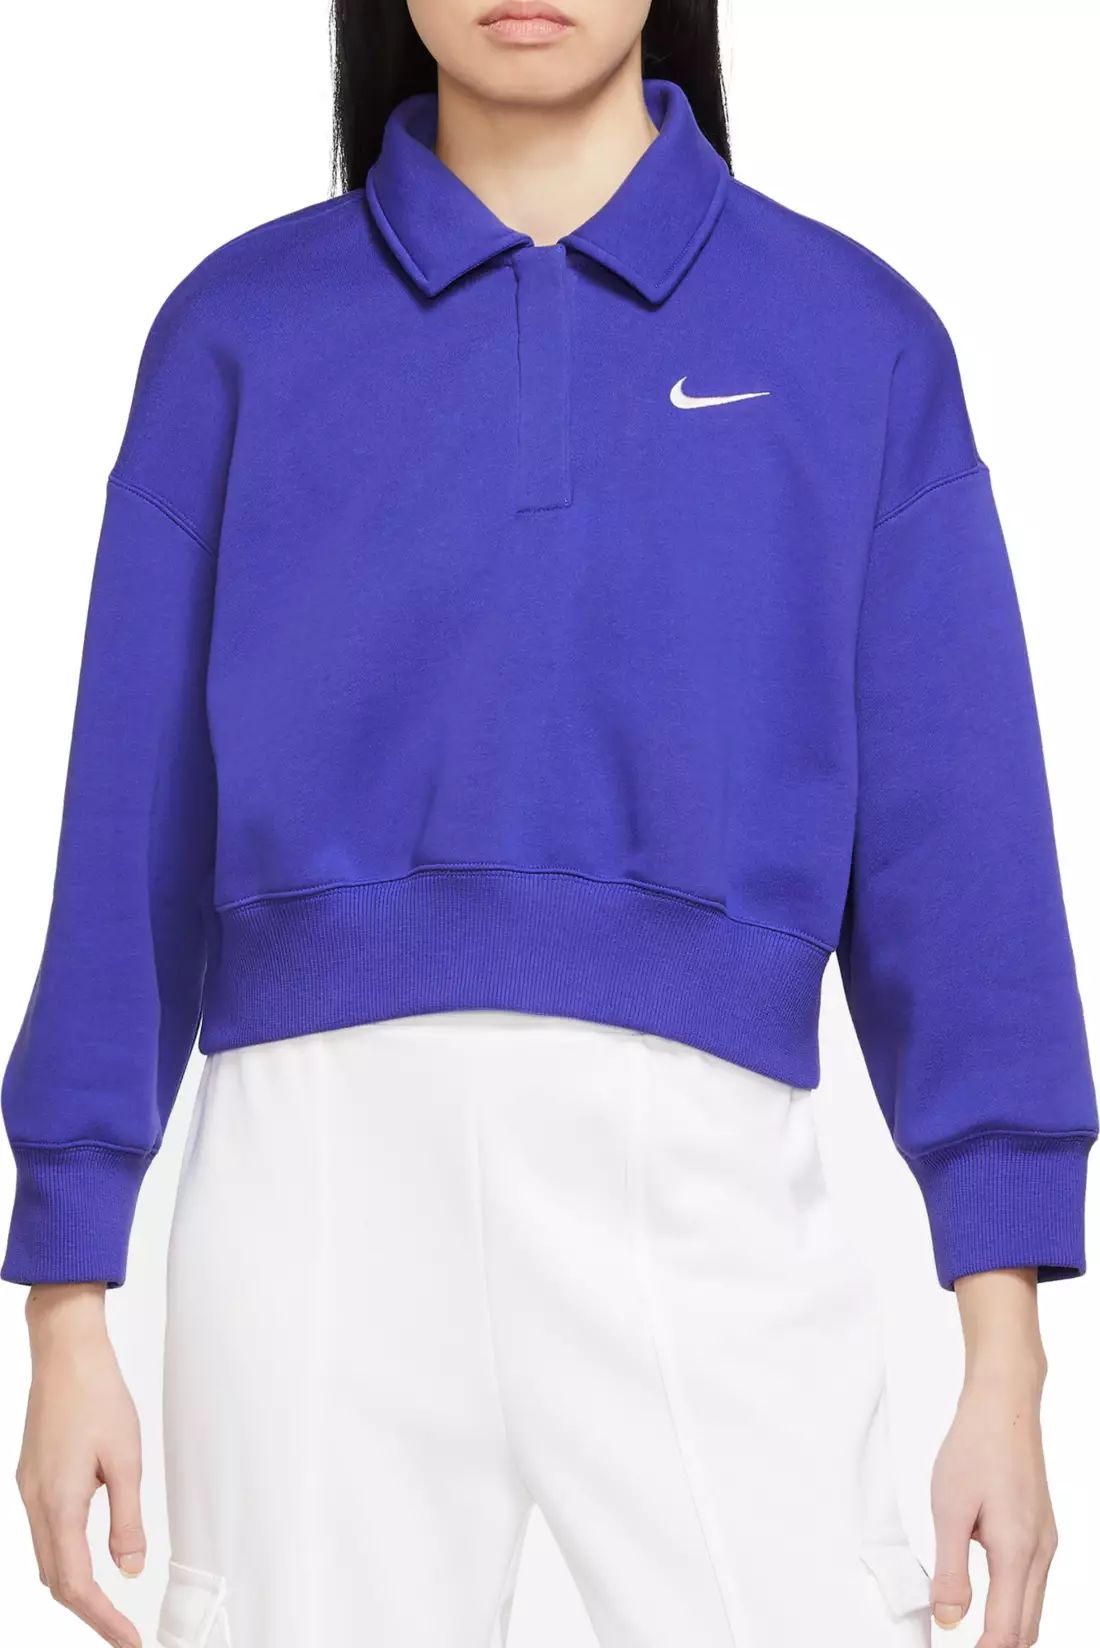 Nike Women's Sportswear Phoenix Fleece 3/4-Sleeve Crop Polo Sweatshirt | Dick's Sporting Goods